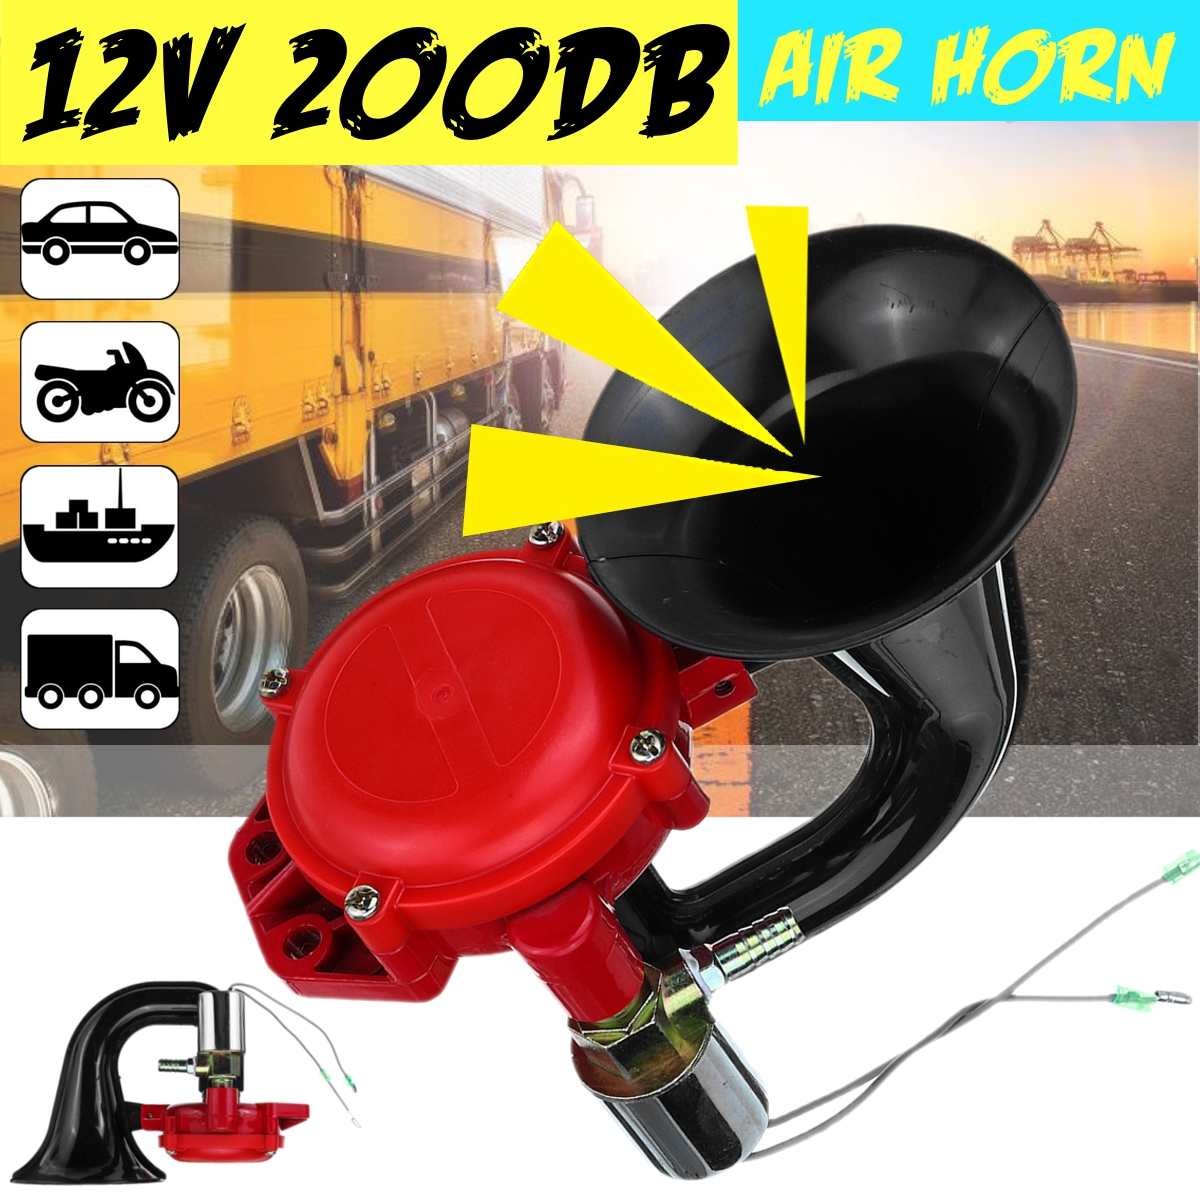 12V 200dB Auto Air Horn Loud Truck Trumpet Air Horn for Auto Car Vehicle Trucks Bus Van Train Motorcycle